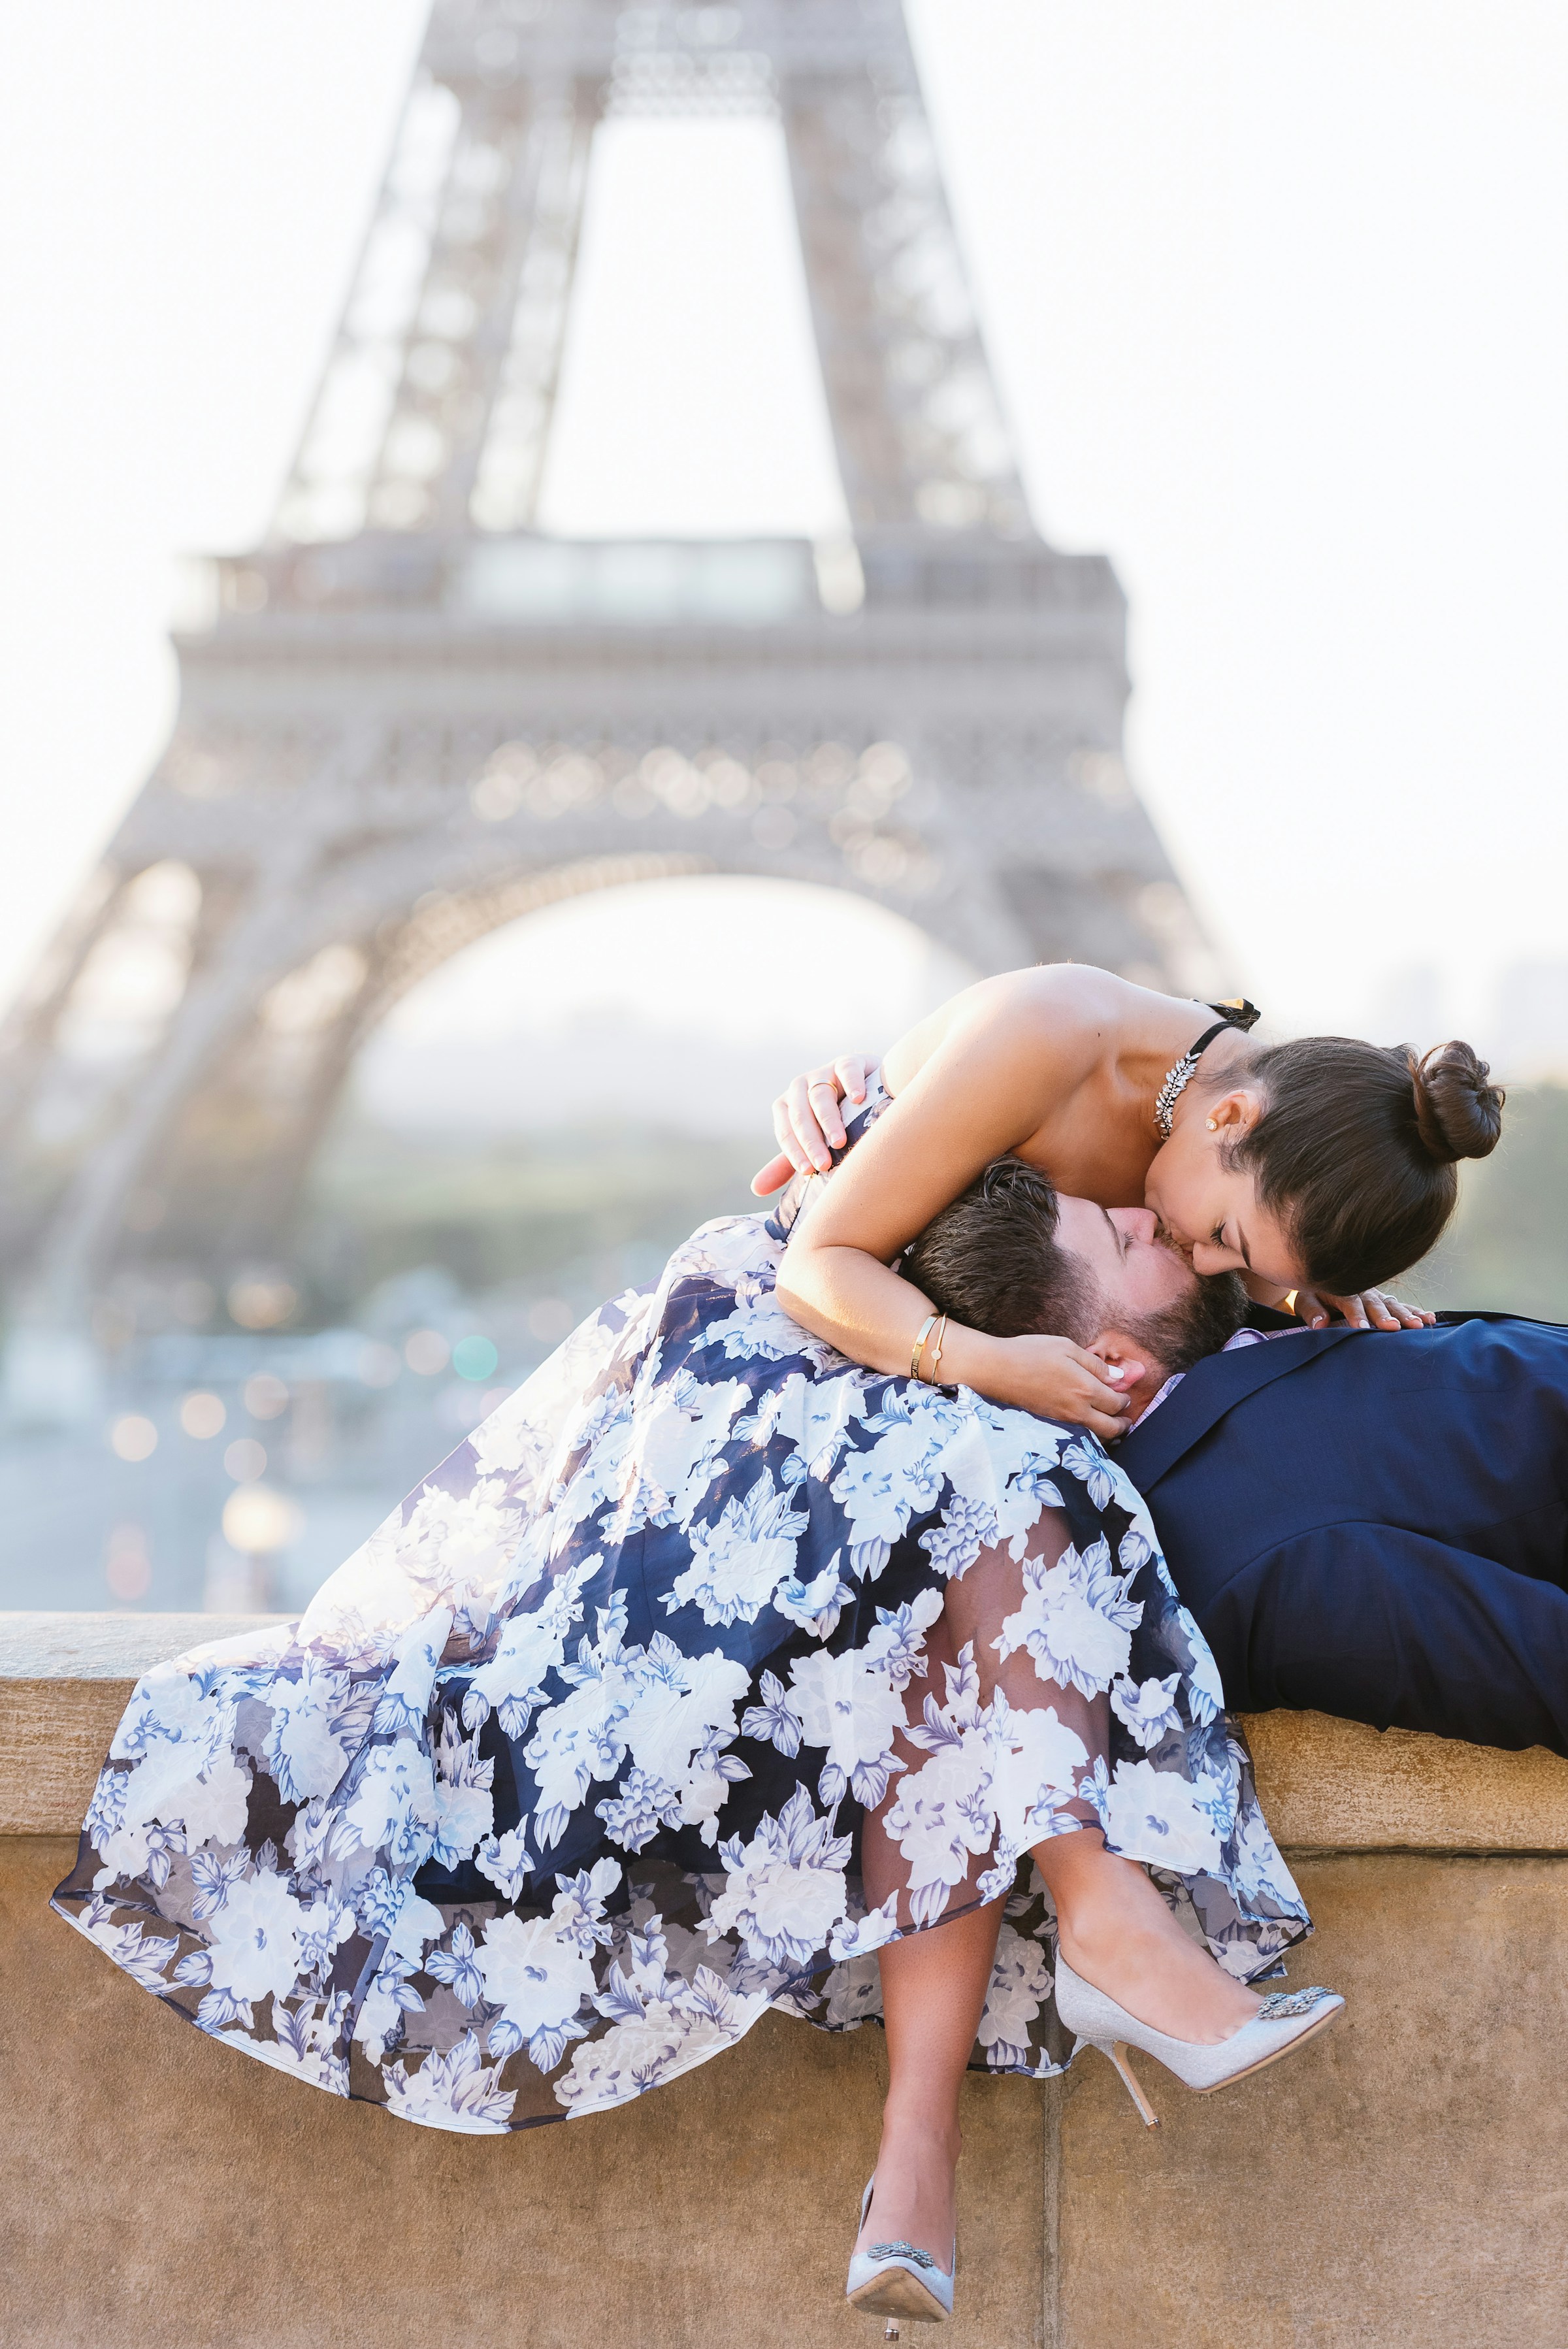 Ein Paar küsst sich auf einem Sims vor dem Eiffelturm in Paris | Quelle: Unsplash